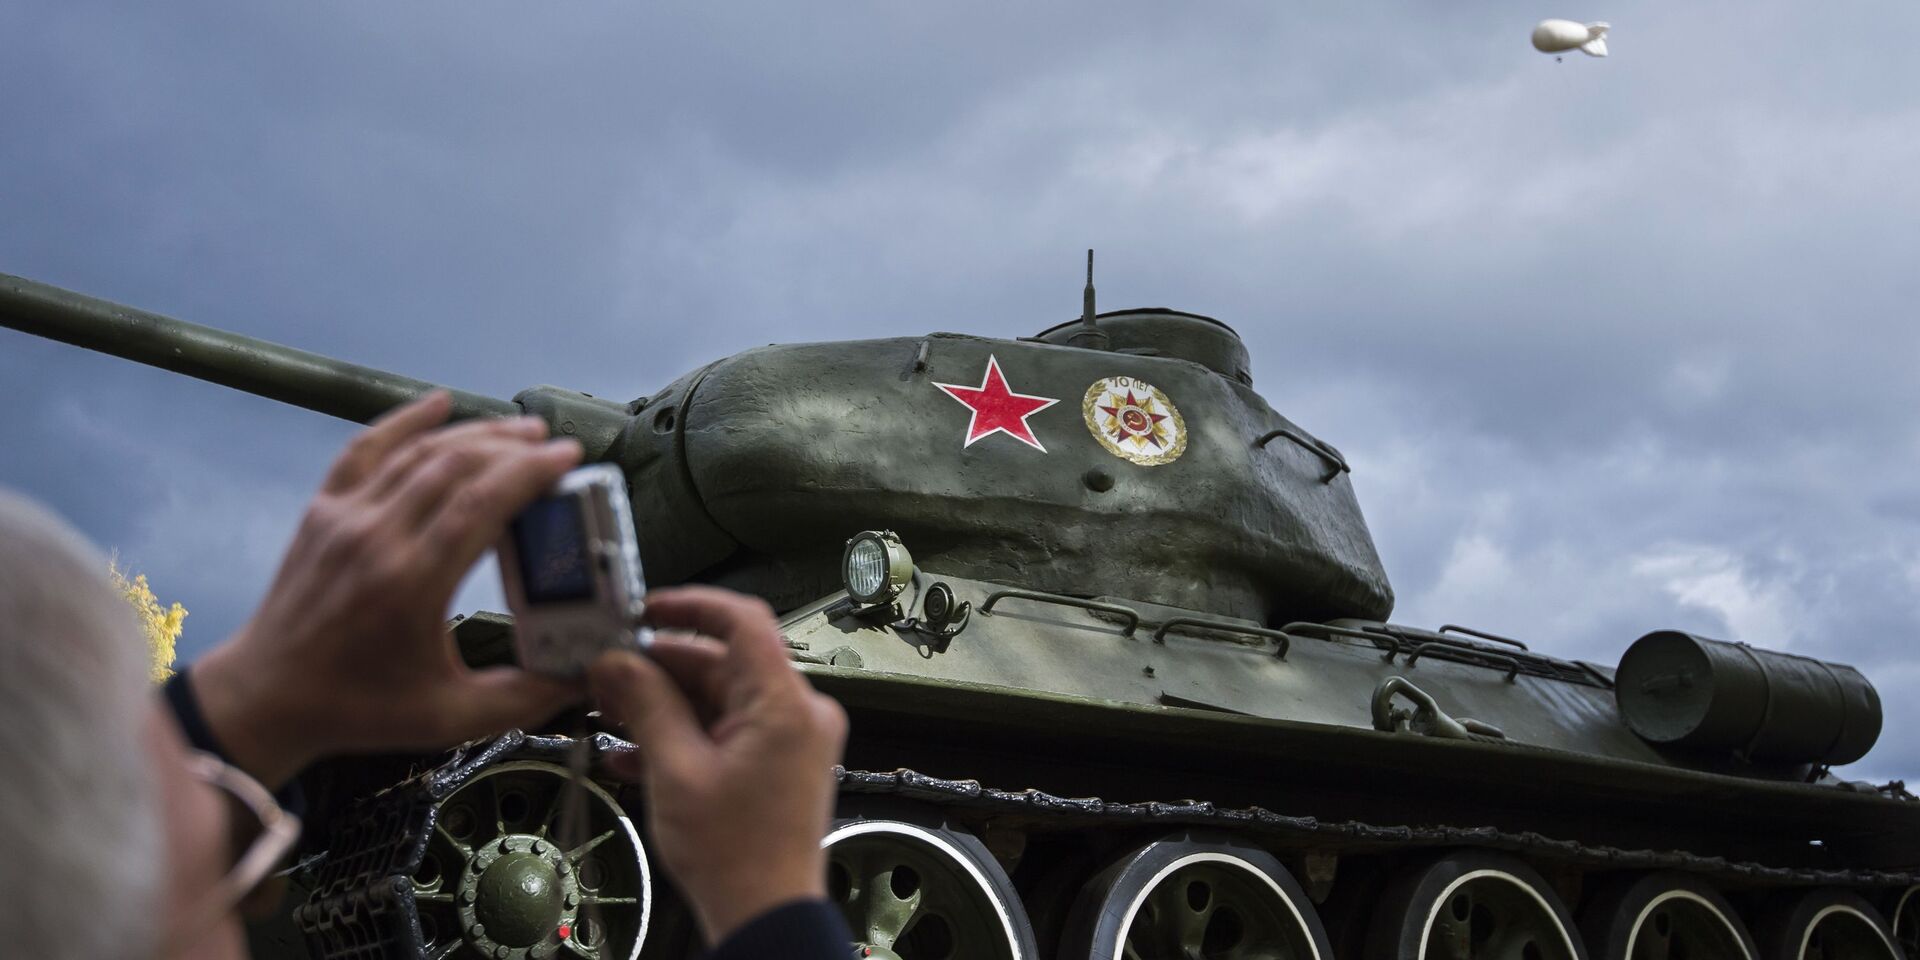 Танк Т-34 периода Великой Отечественной войны на 10-й международной выставке Russia Arms Expo - ИноСМИ, 1920, 03.03.2021